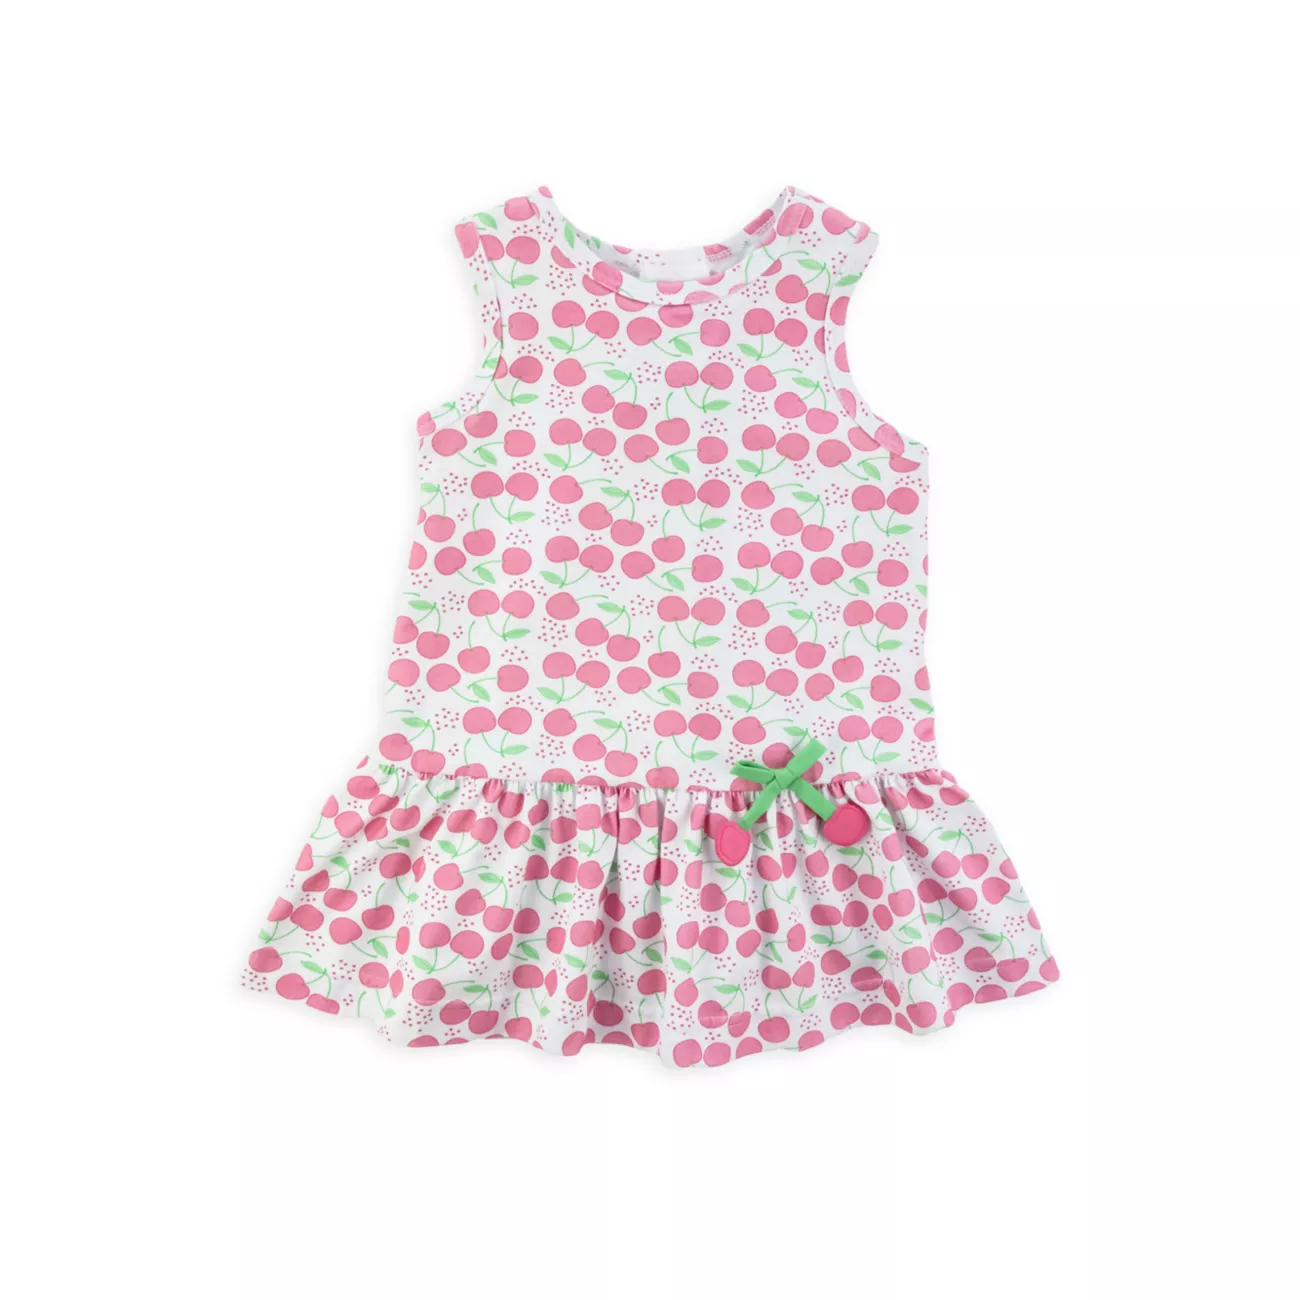 Трикотажное платье с принтом вишни для маленькой девочки Florence Eiseman